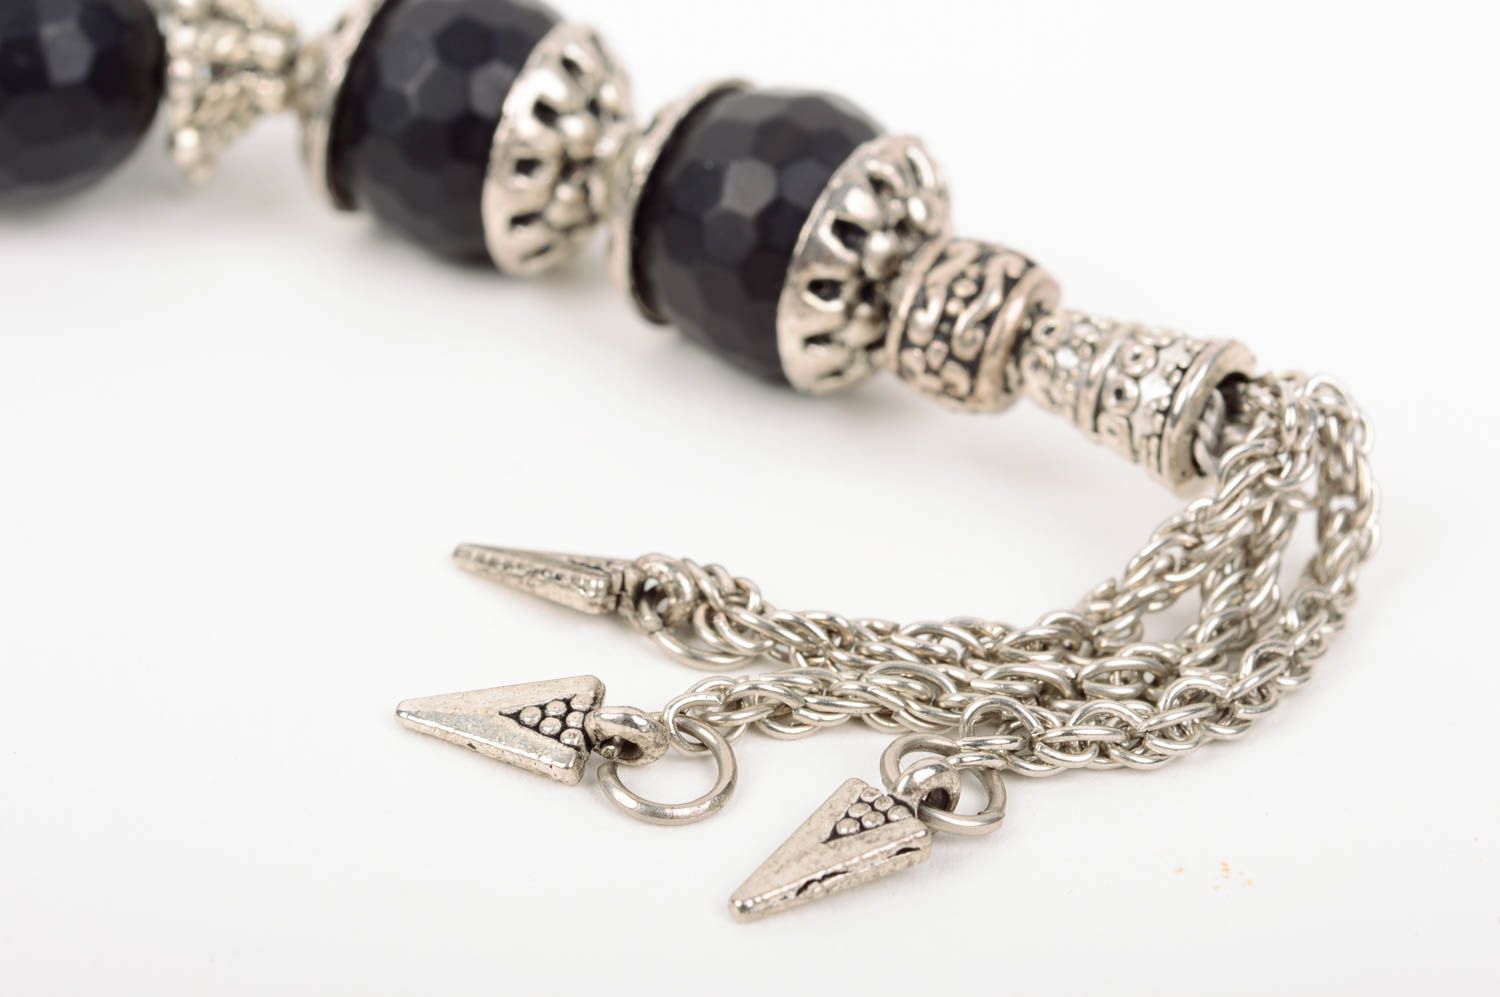 Rosary beads handmade prayer rope church accessories spiritual gifts worry beads photo 3